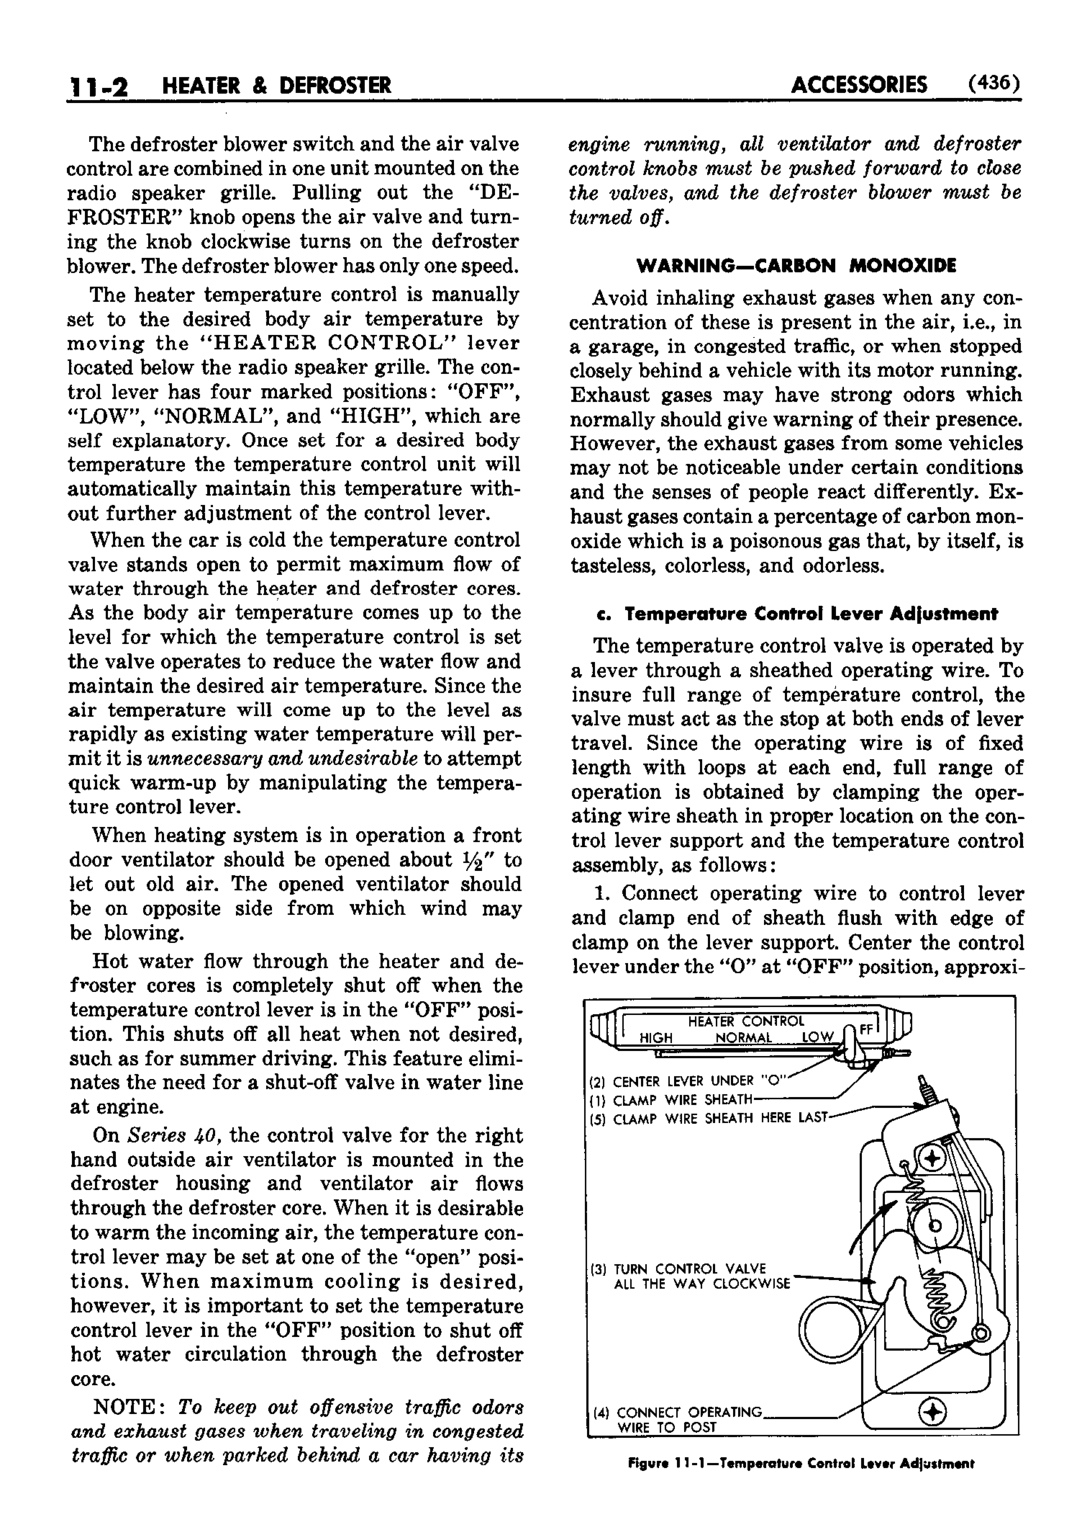 n_12 1952 Buick Shop Manual - Accessories-002-002.jpg